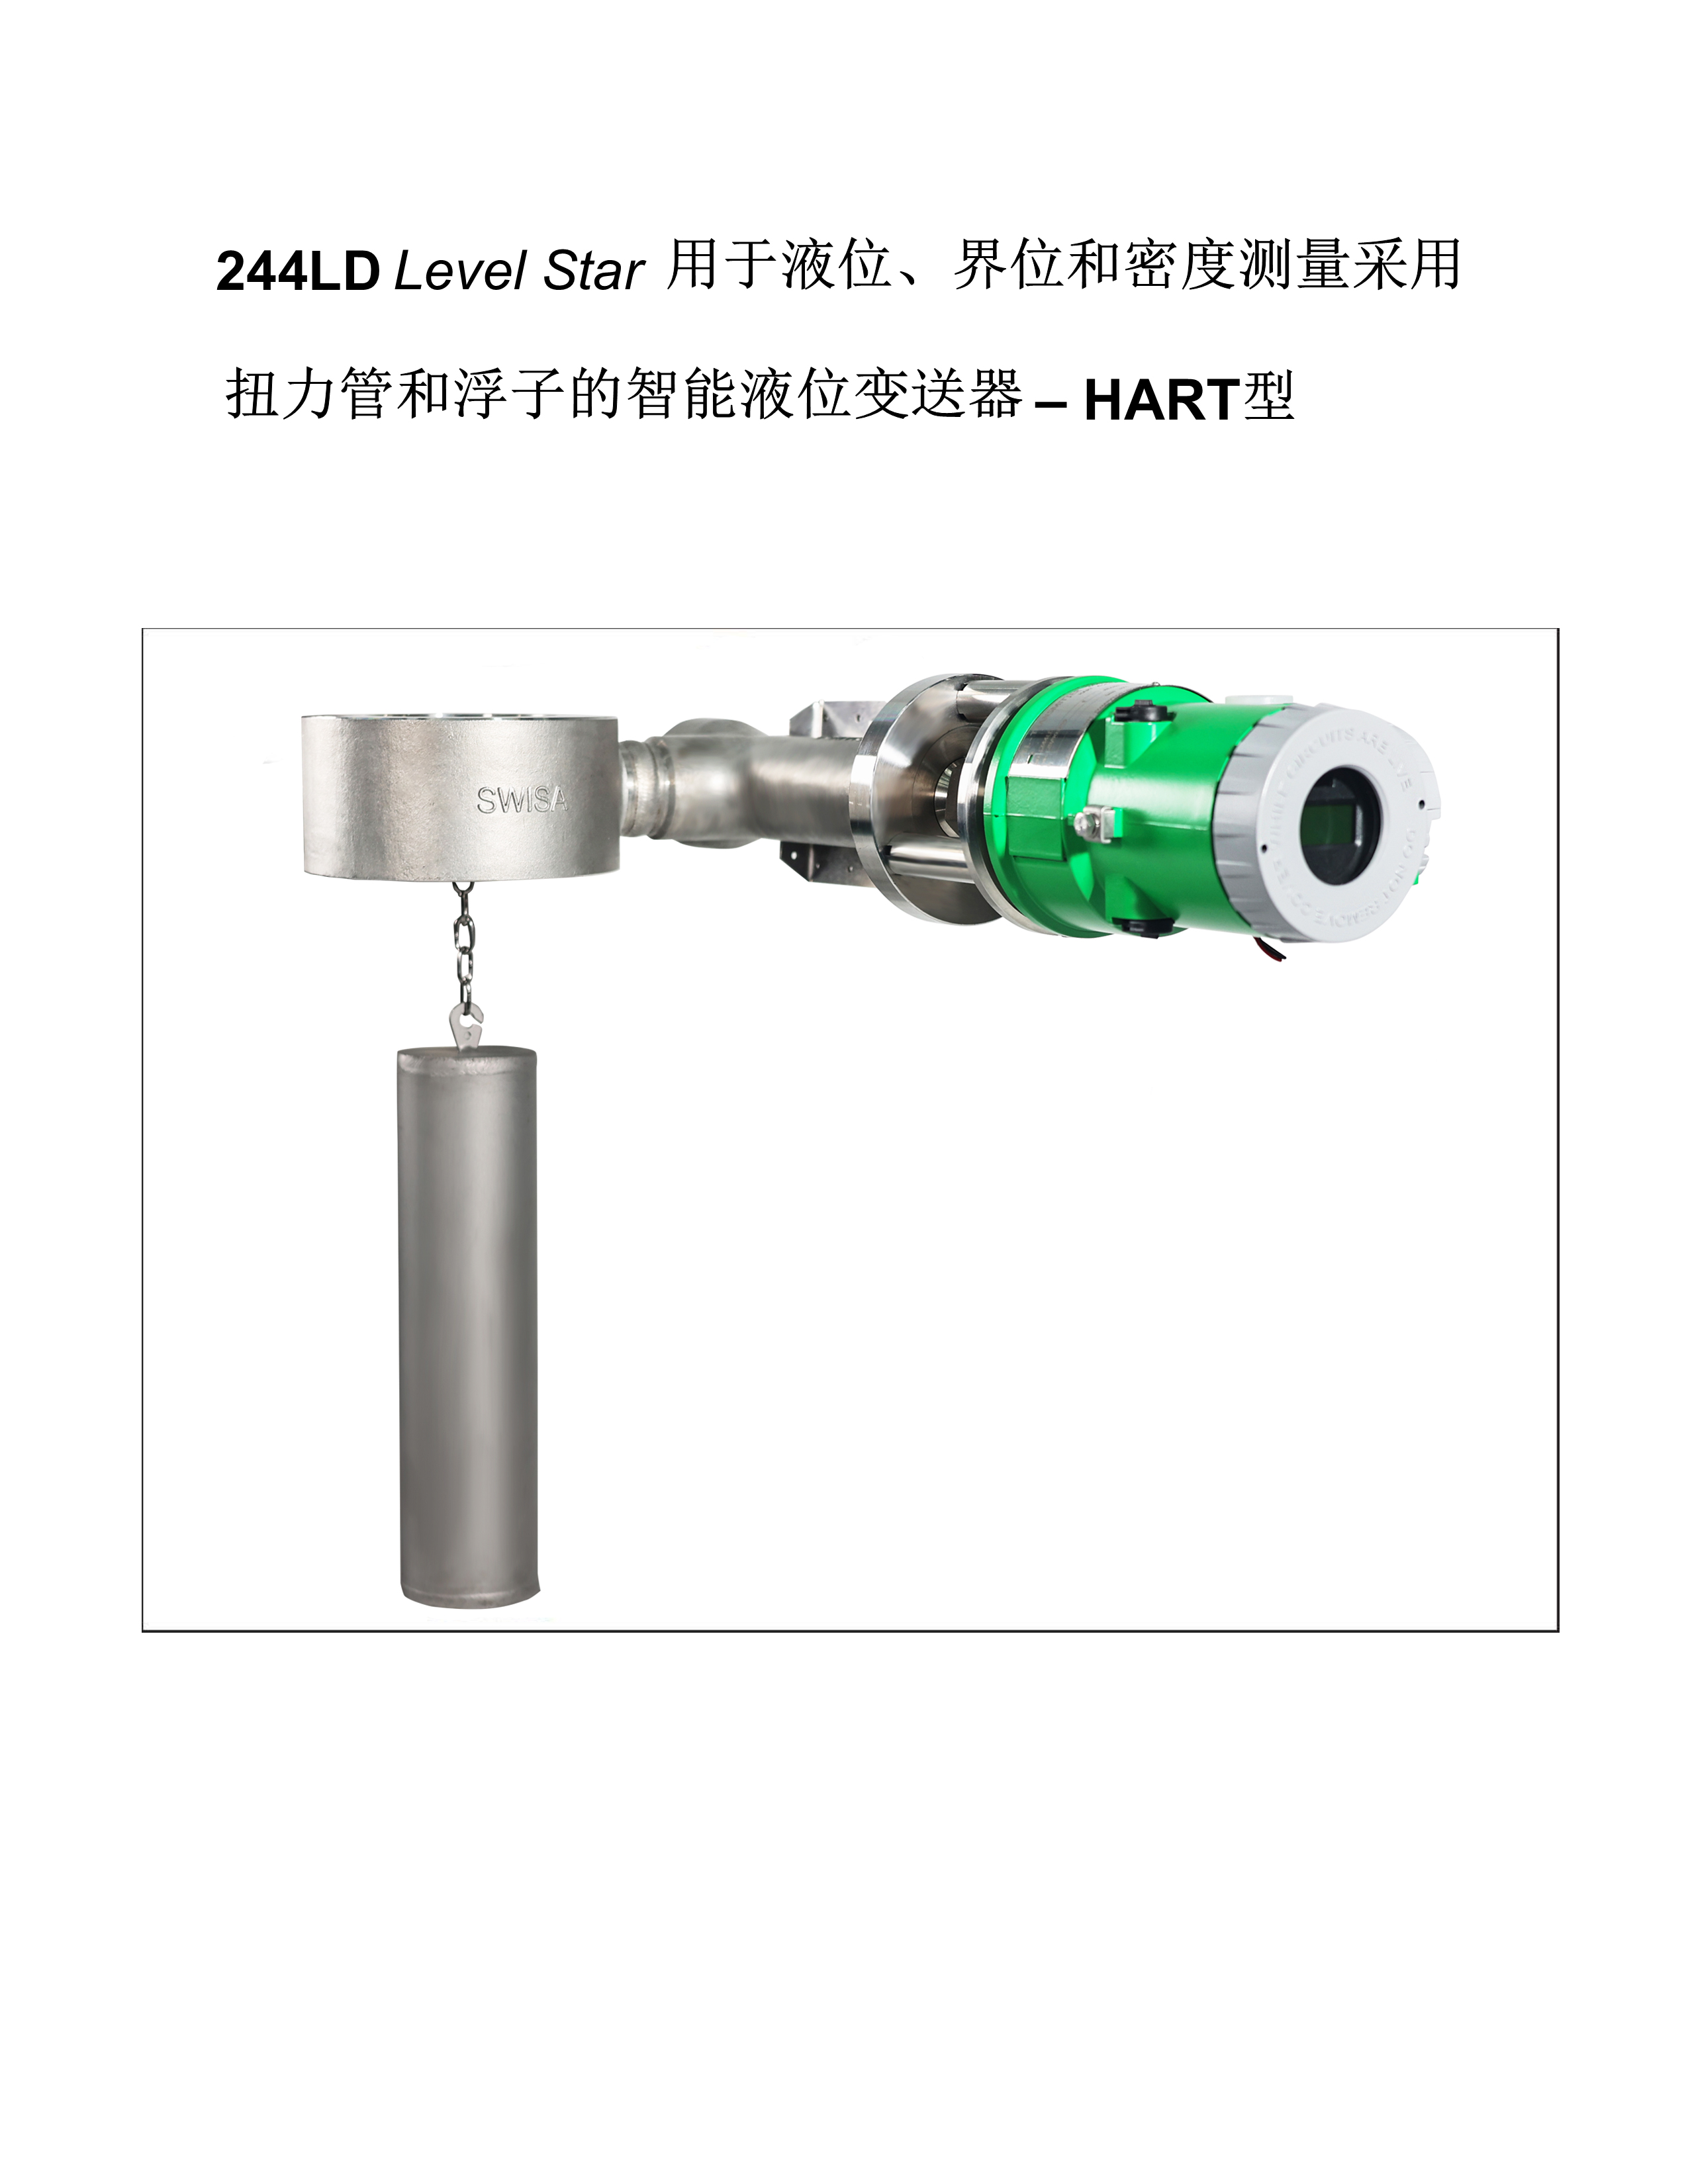 深圳244LD电浮筒液位计安装与操作说明书